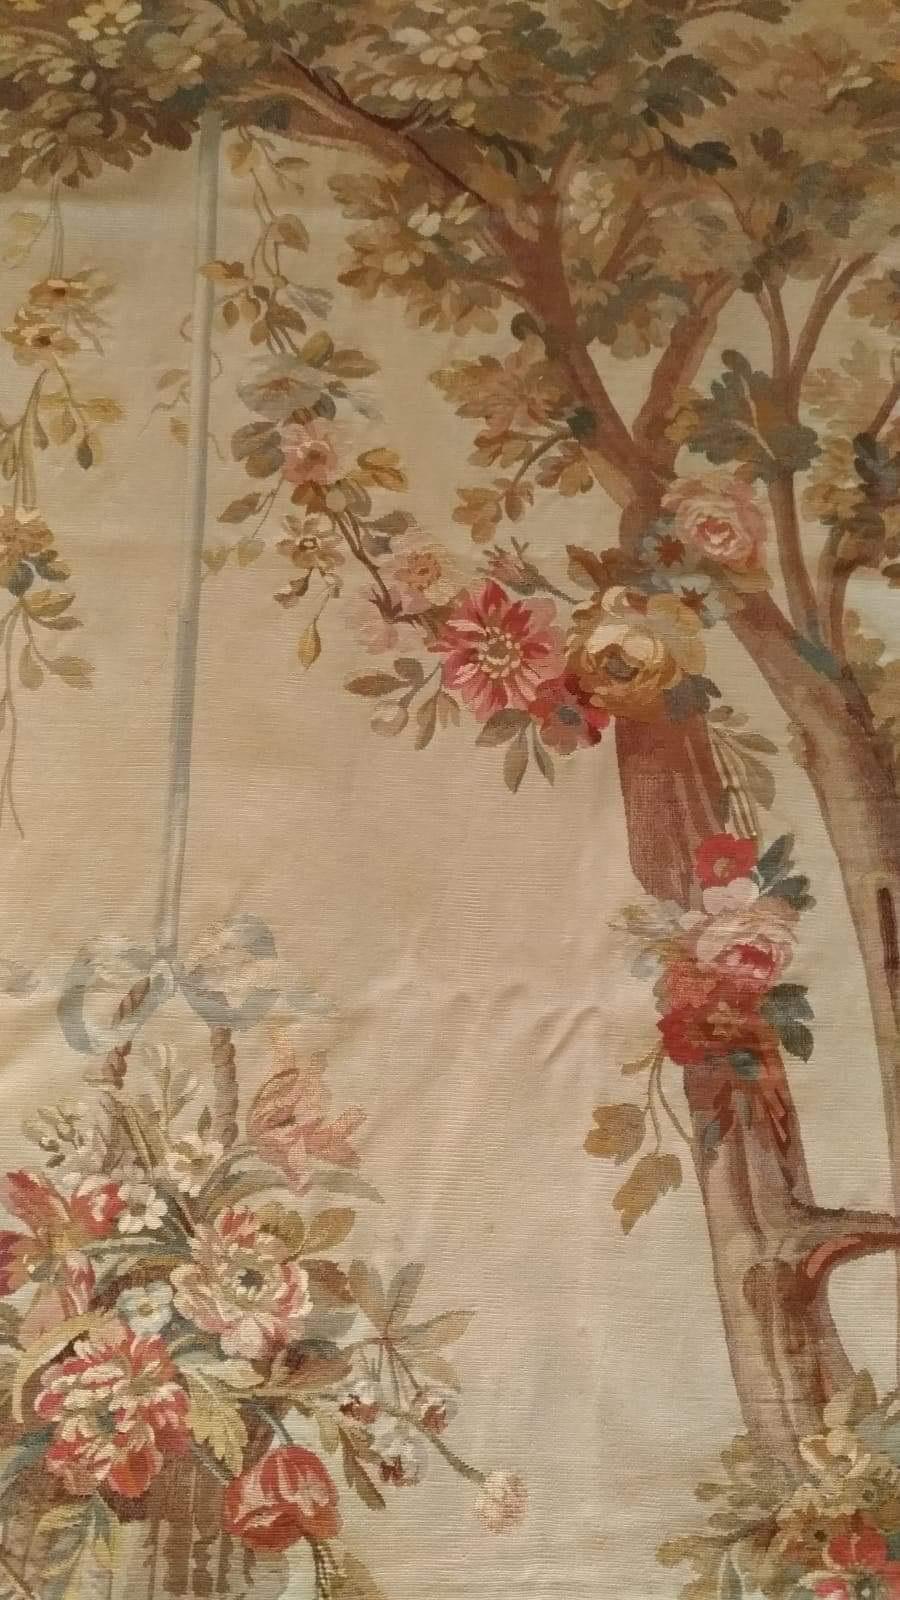 Romantic Pair of Door, 19th Century Aubusson Tapestry